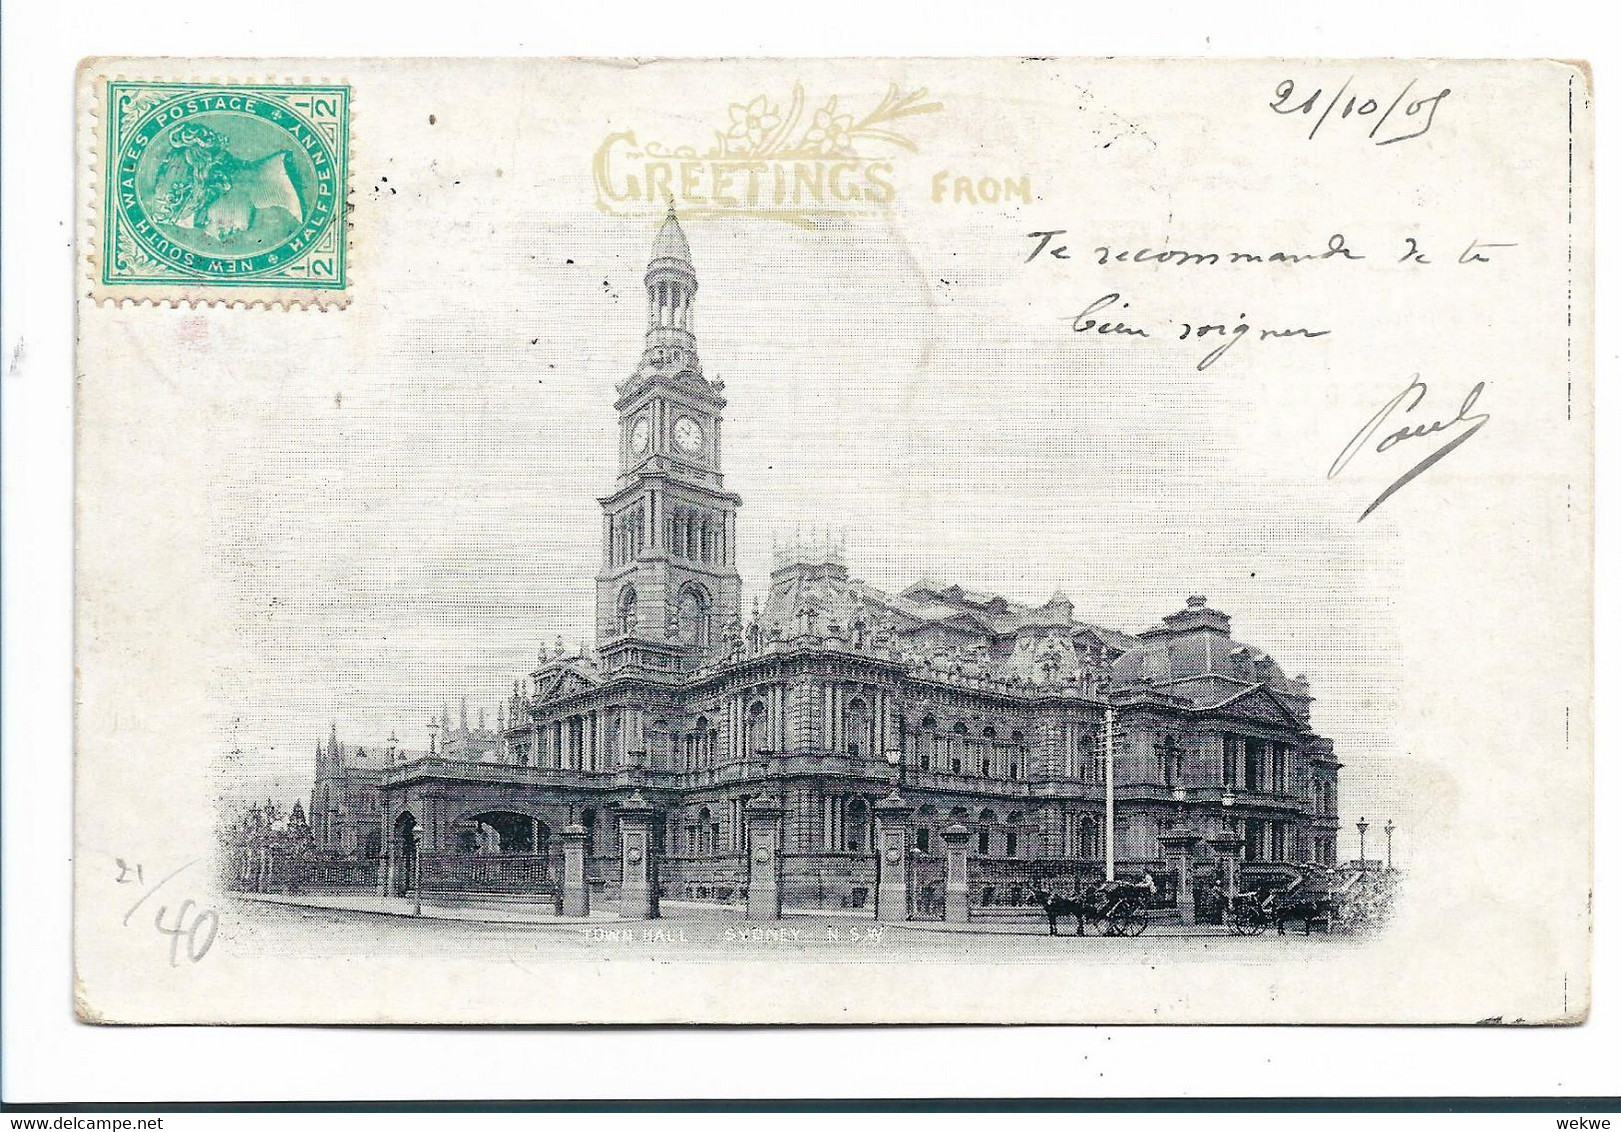 NSW107 / AUSTRALIEN - Gruss-Ganzsache Mit Sydney Town Hall 1905 Nach Paris Mit Strafportozahlung Bei Ankunft - Covers & Documents